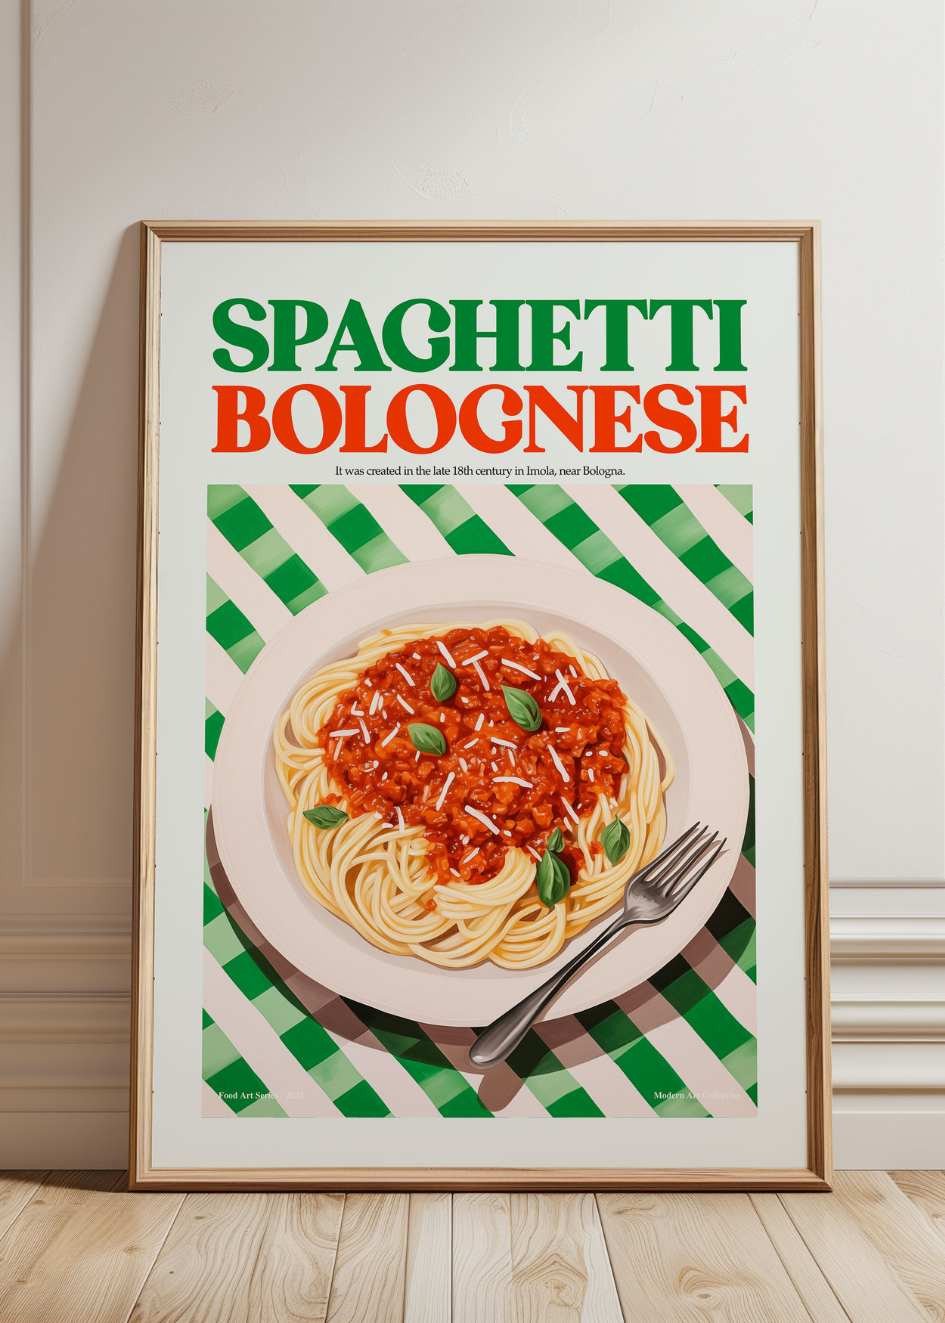 Bolognese Poster